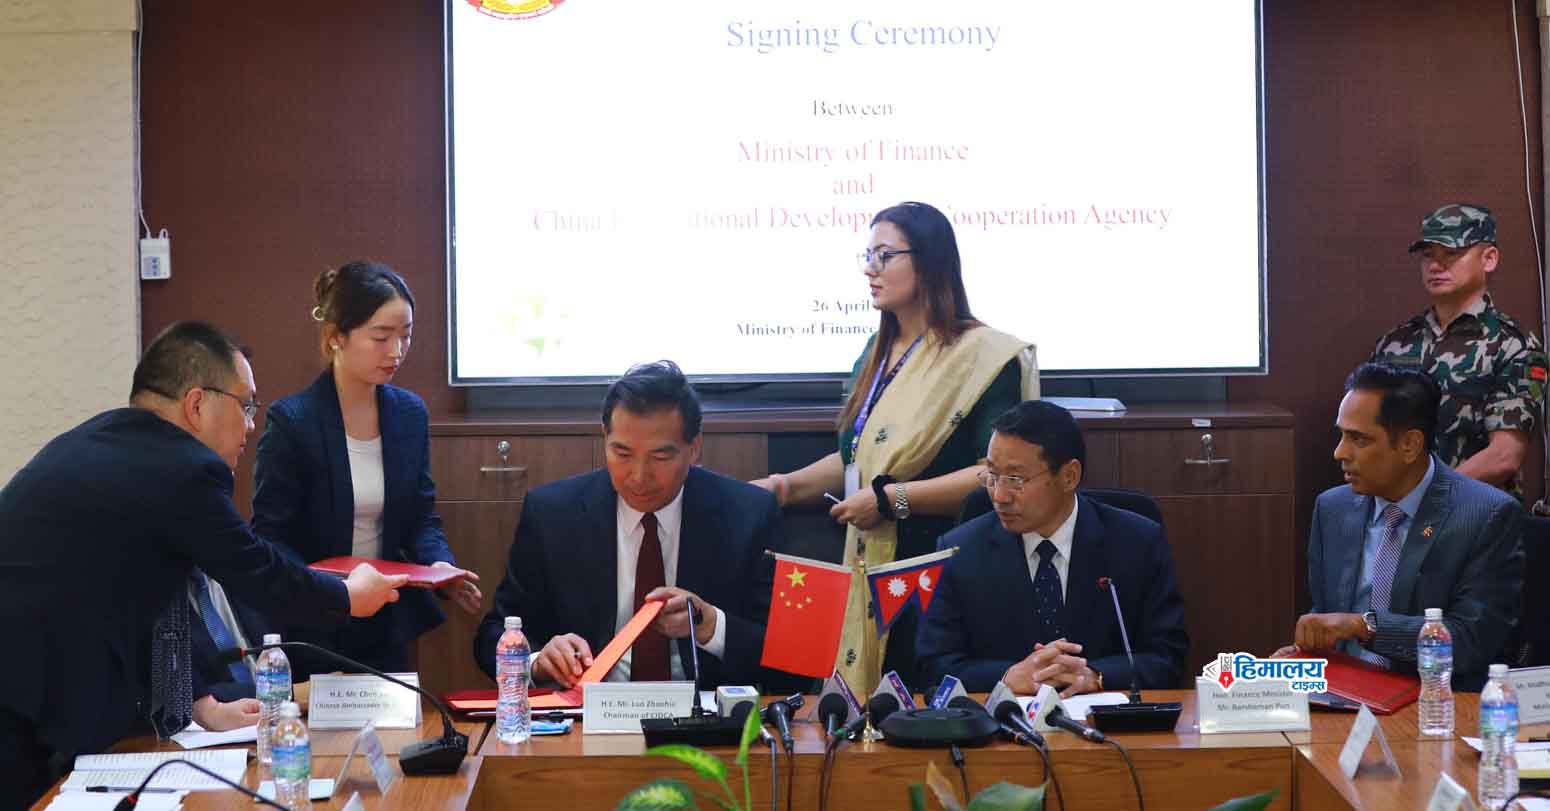 नेपाल र चीनबीच मानव संशाधन विकास र बोनम्यारो प्रत्यारोपण सम्बन्धी दुई सम्झौतामा हस्ताक्षर